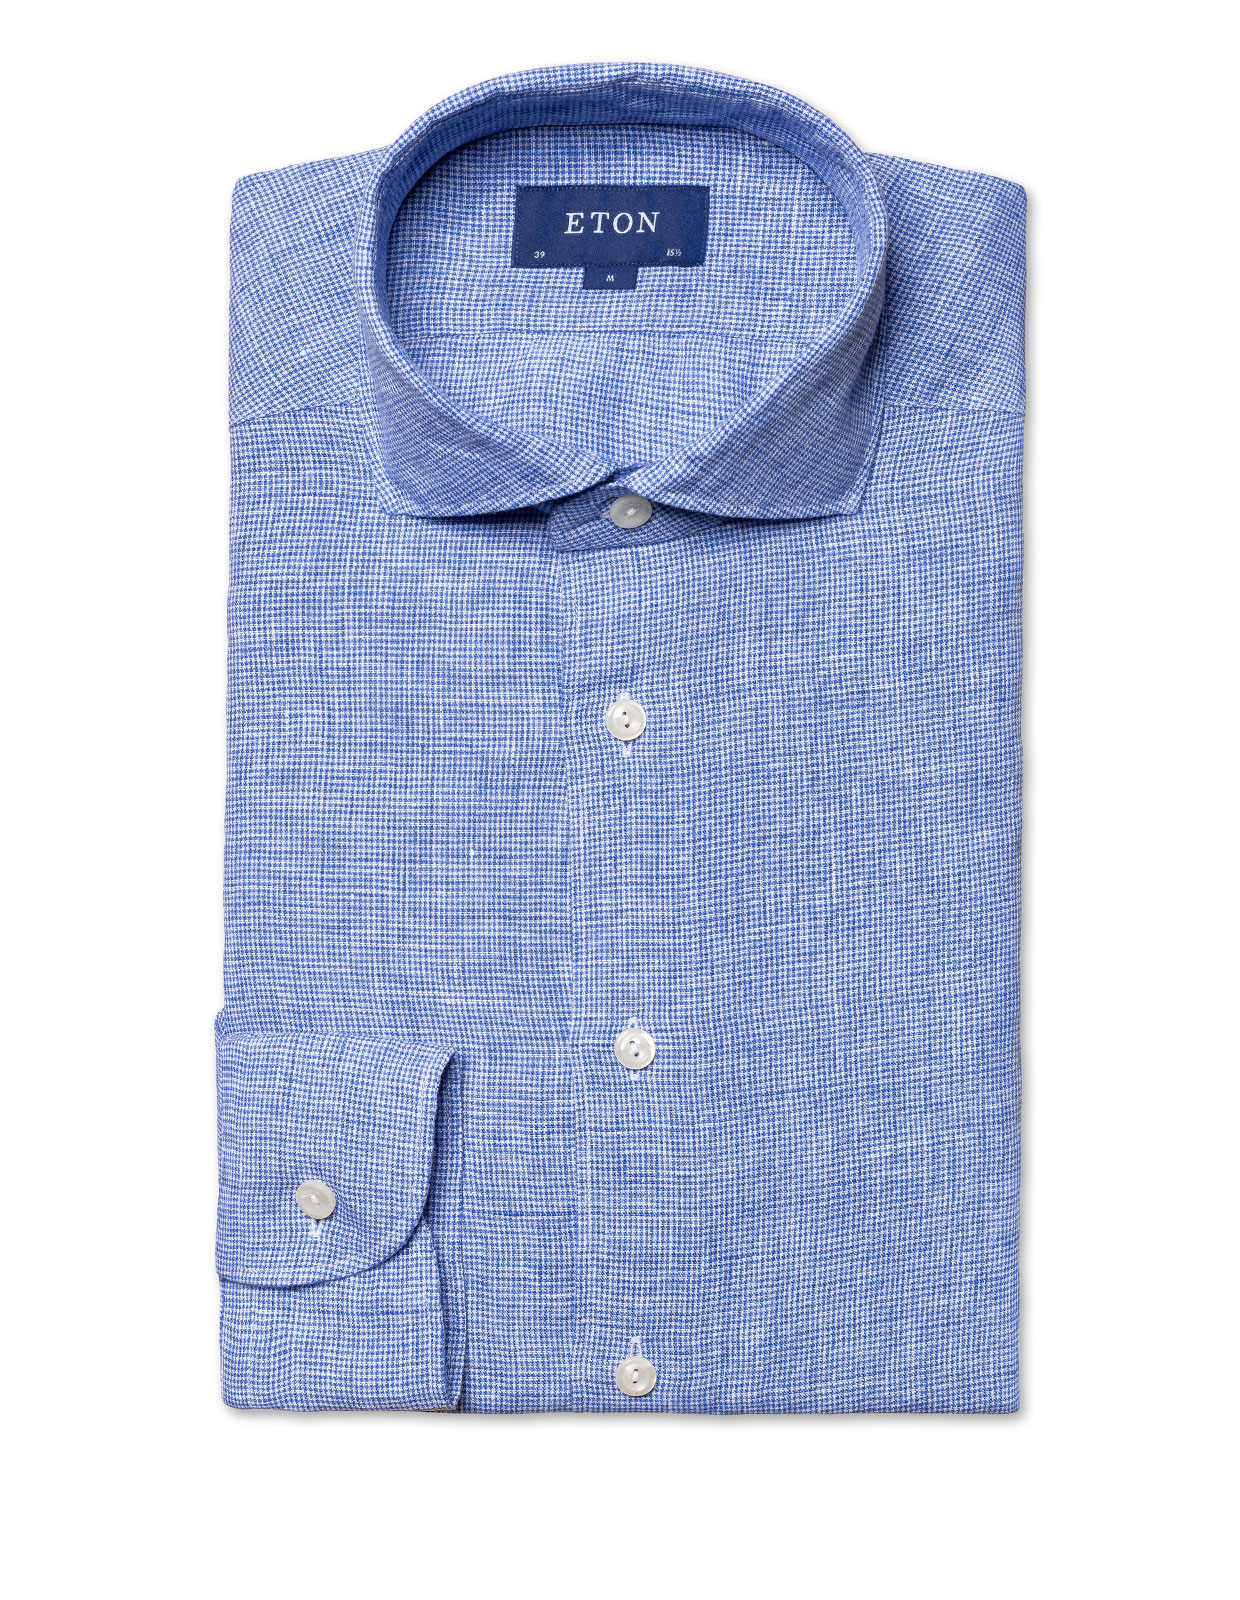 Contemporay Linen Shirt Navy Blue